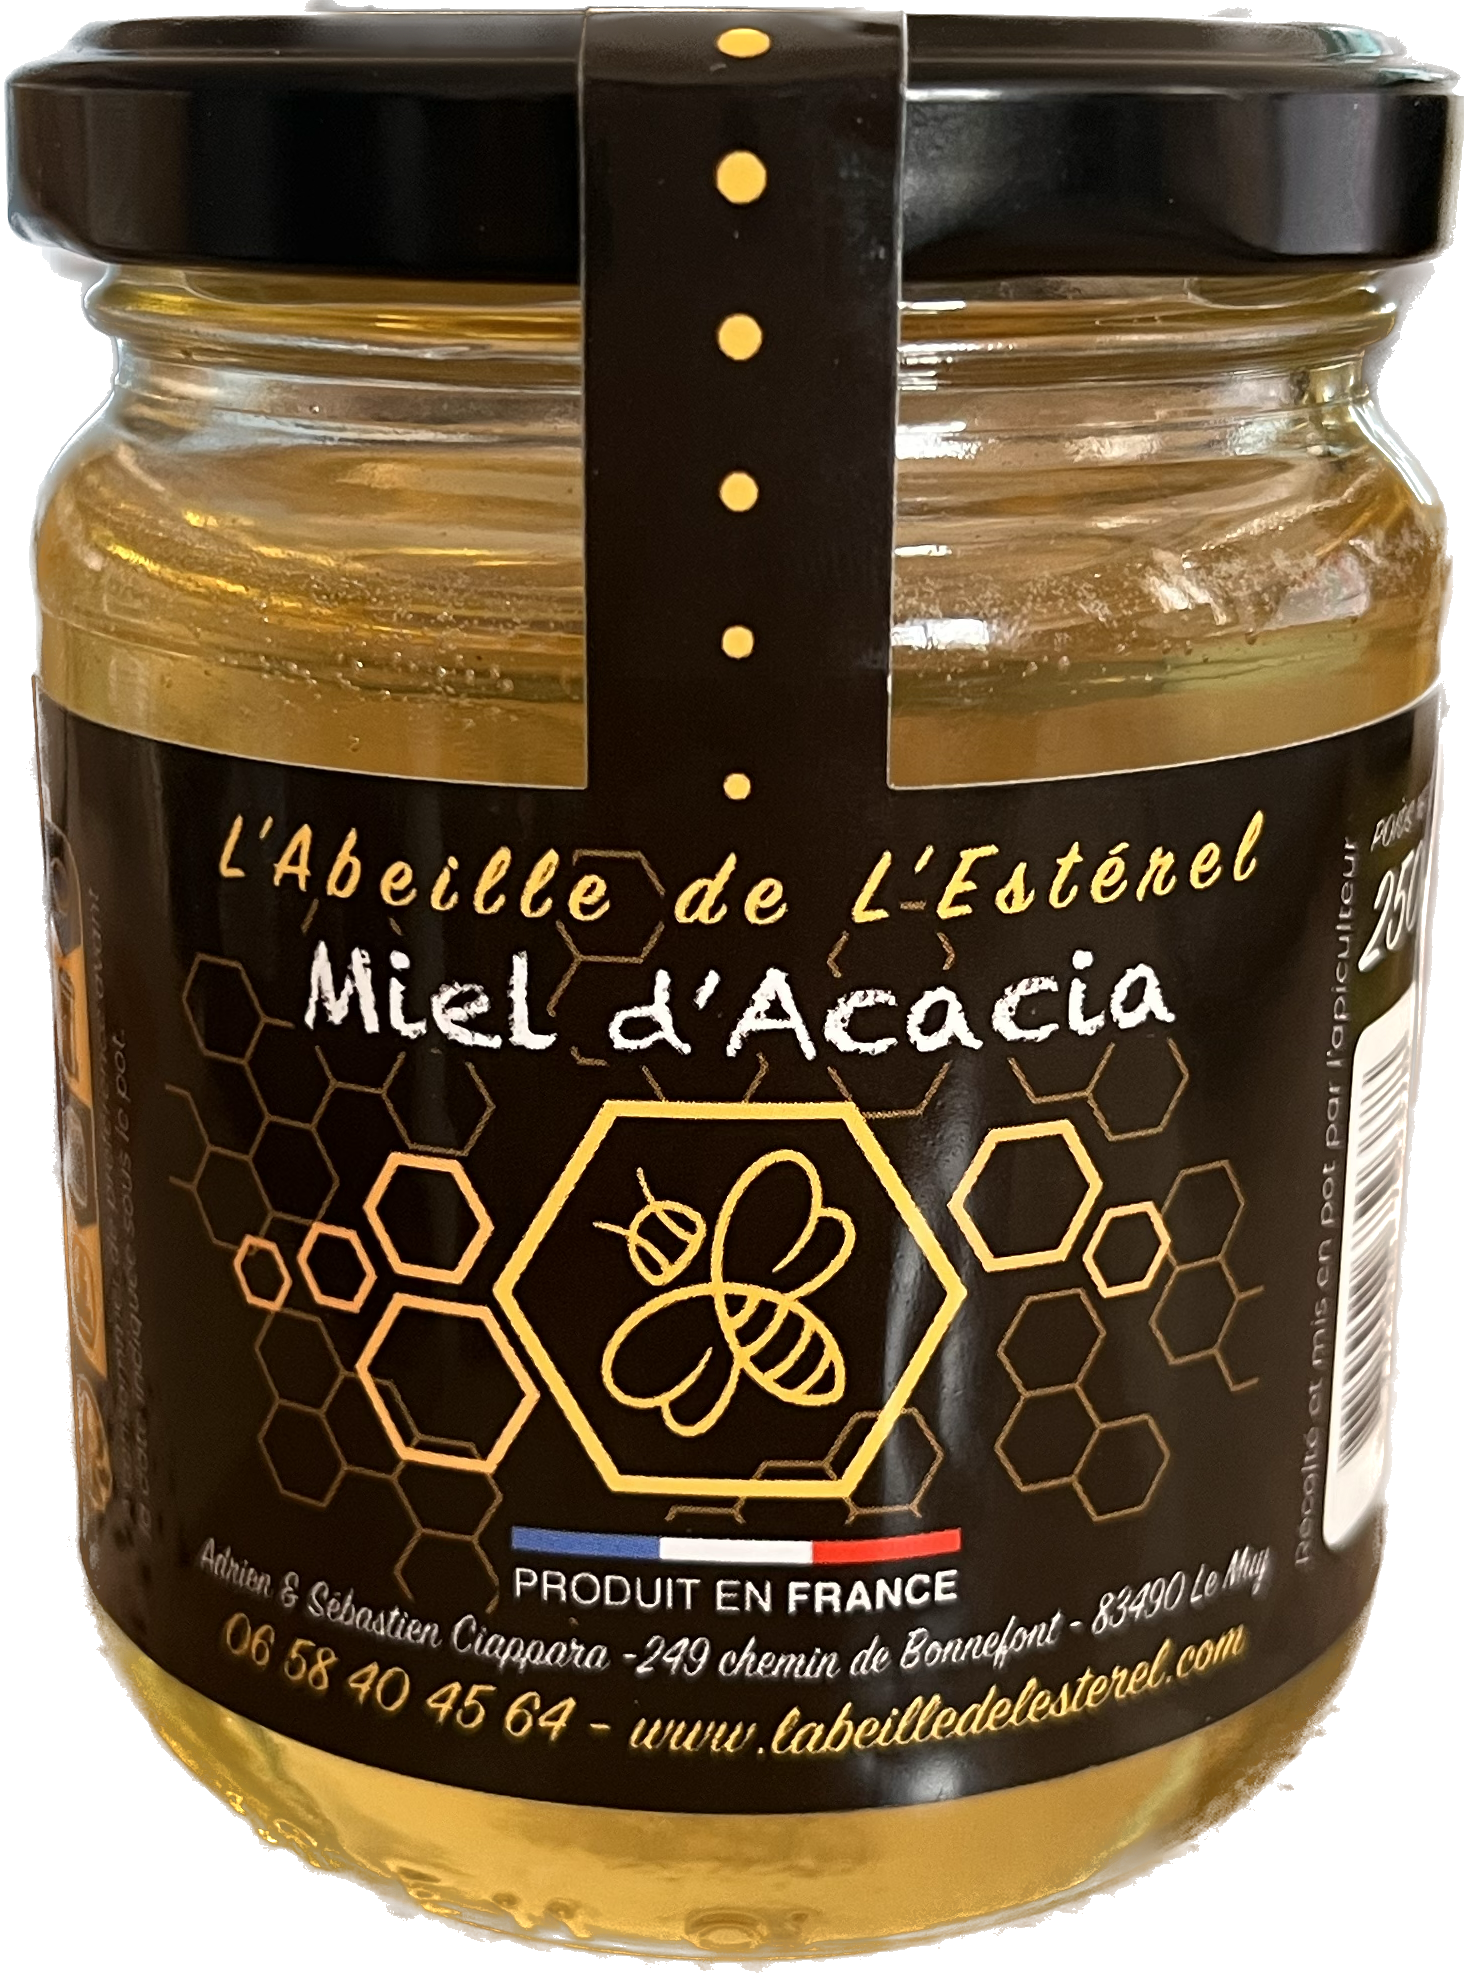 Miel d'acacia - Apiculteurs Récoltant en Provence